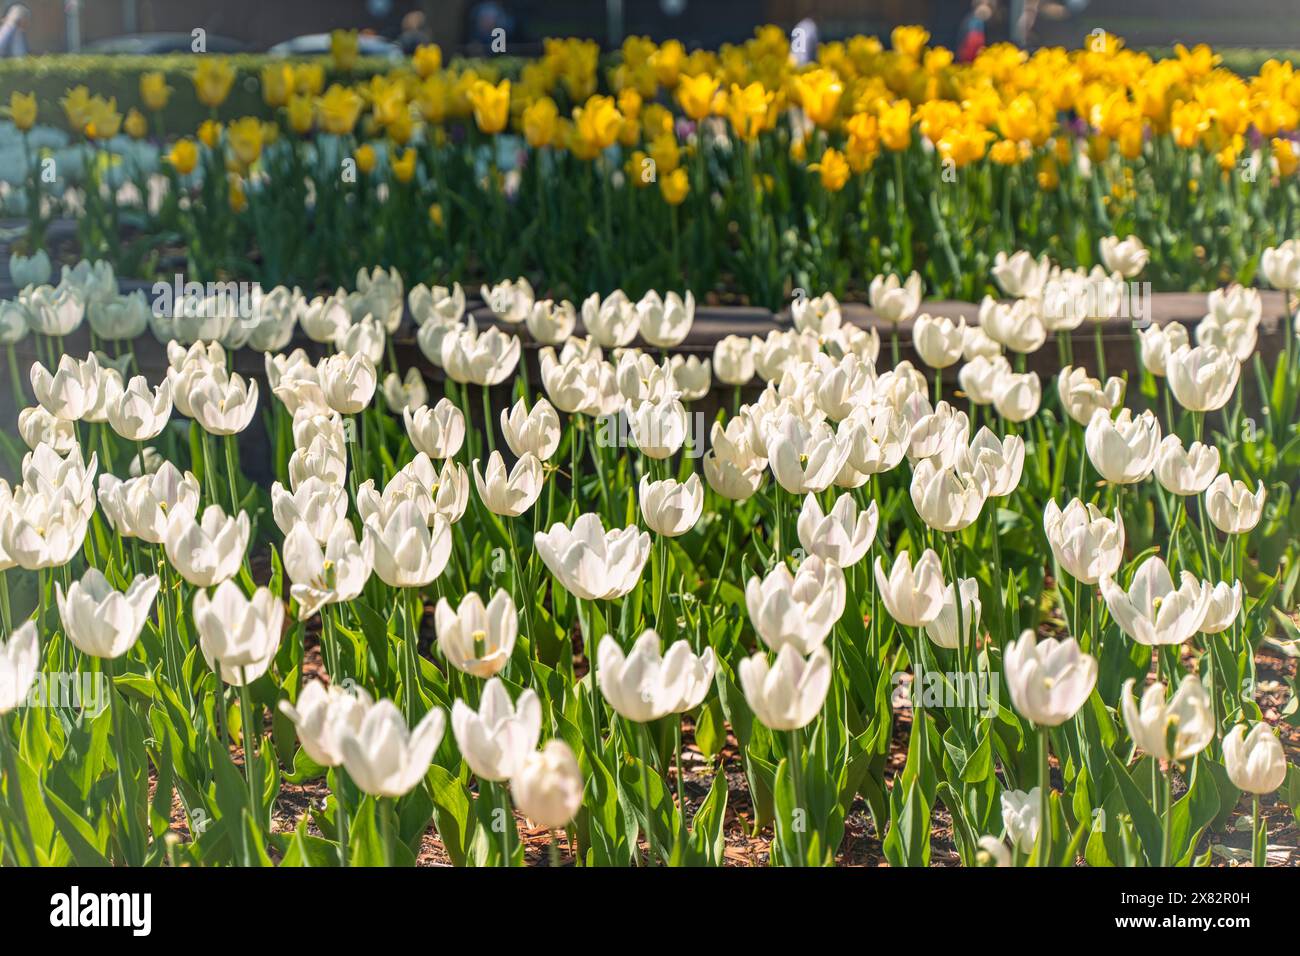 Tulipani bianchi e gialli per le strade della città. Decorazione floreale primaverile. Tulipani nel design paesaggistico. Messa a fuoco selezionata. Foto di alta qualità Foto Stock